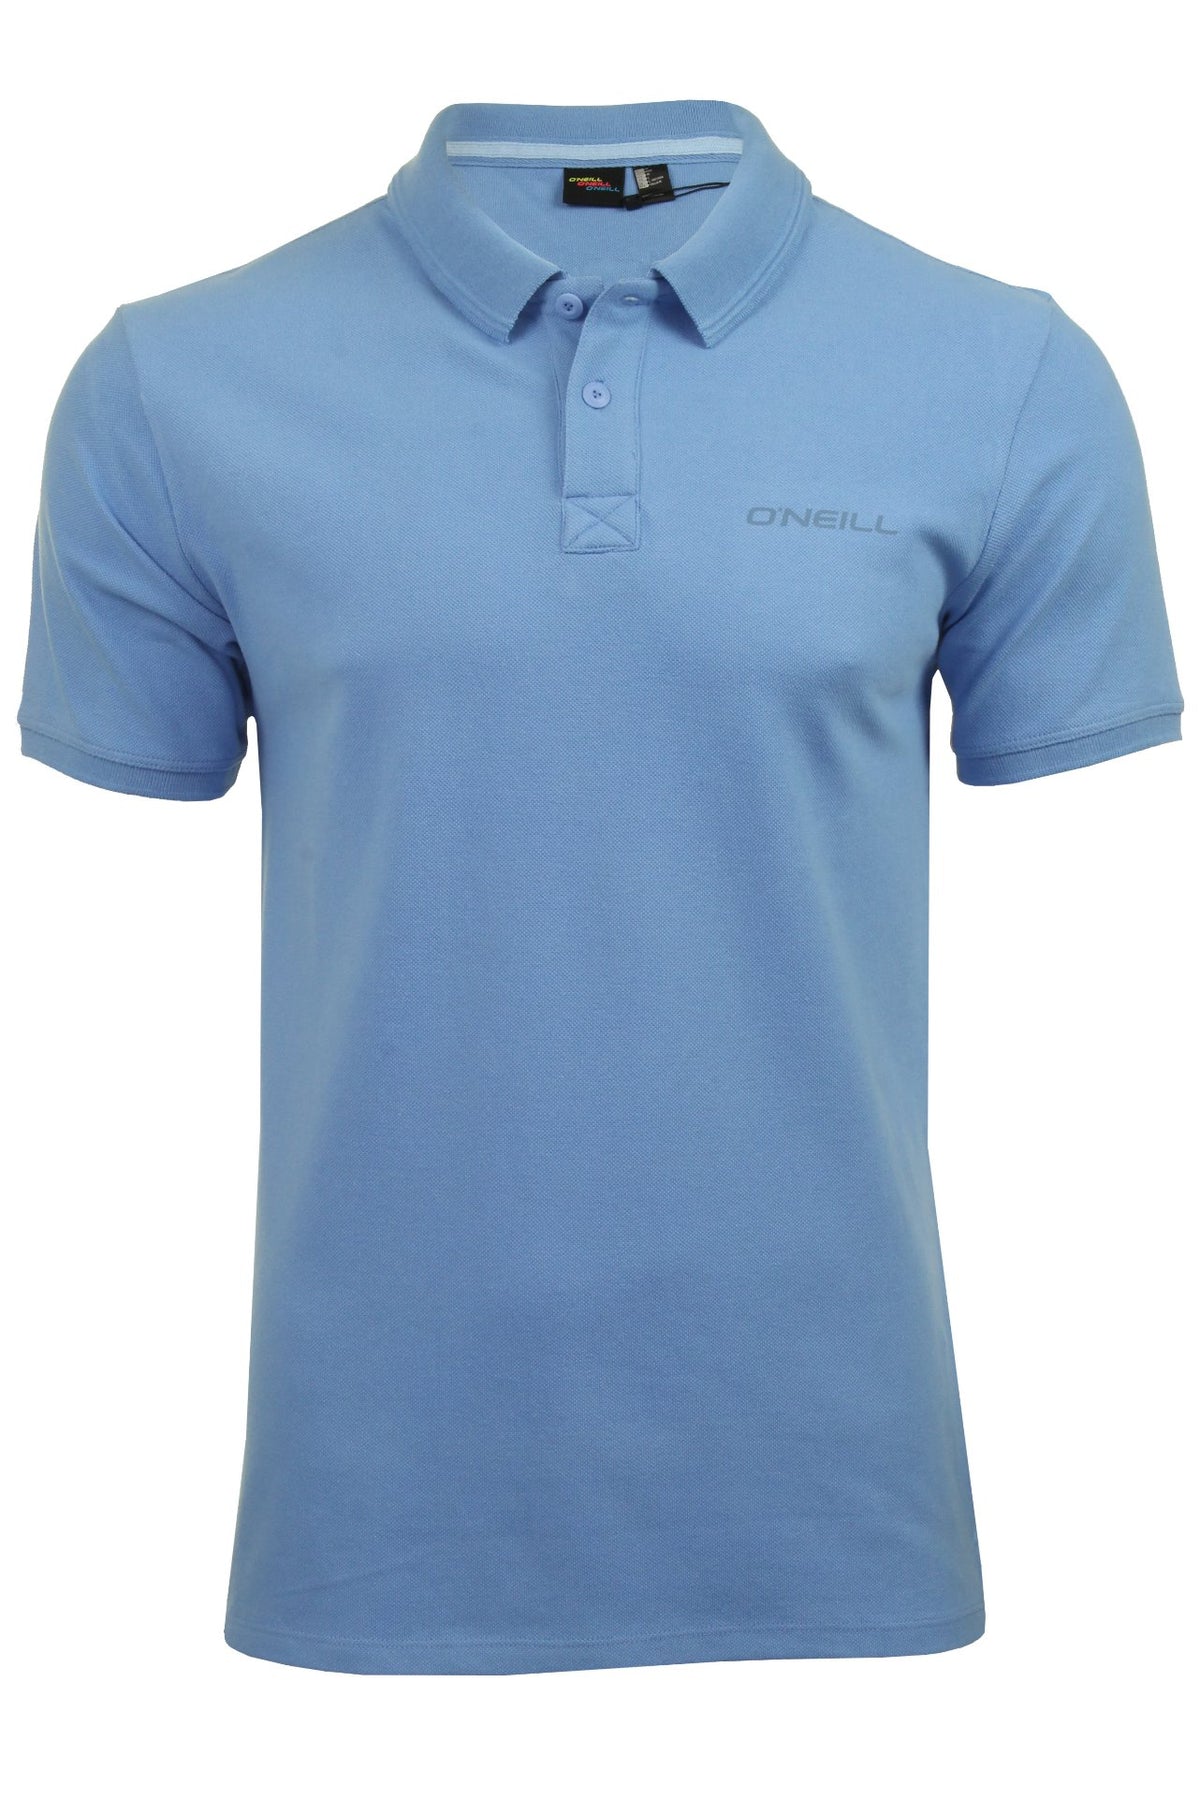 O'Neill Mens Pique Polo T-Shirt, 01, 9A2402, Blue Heven